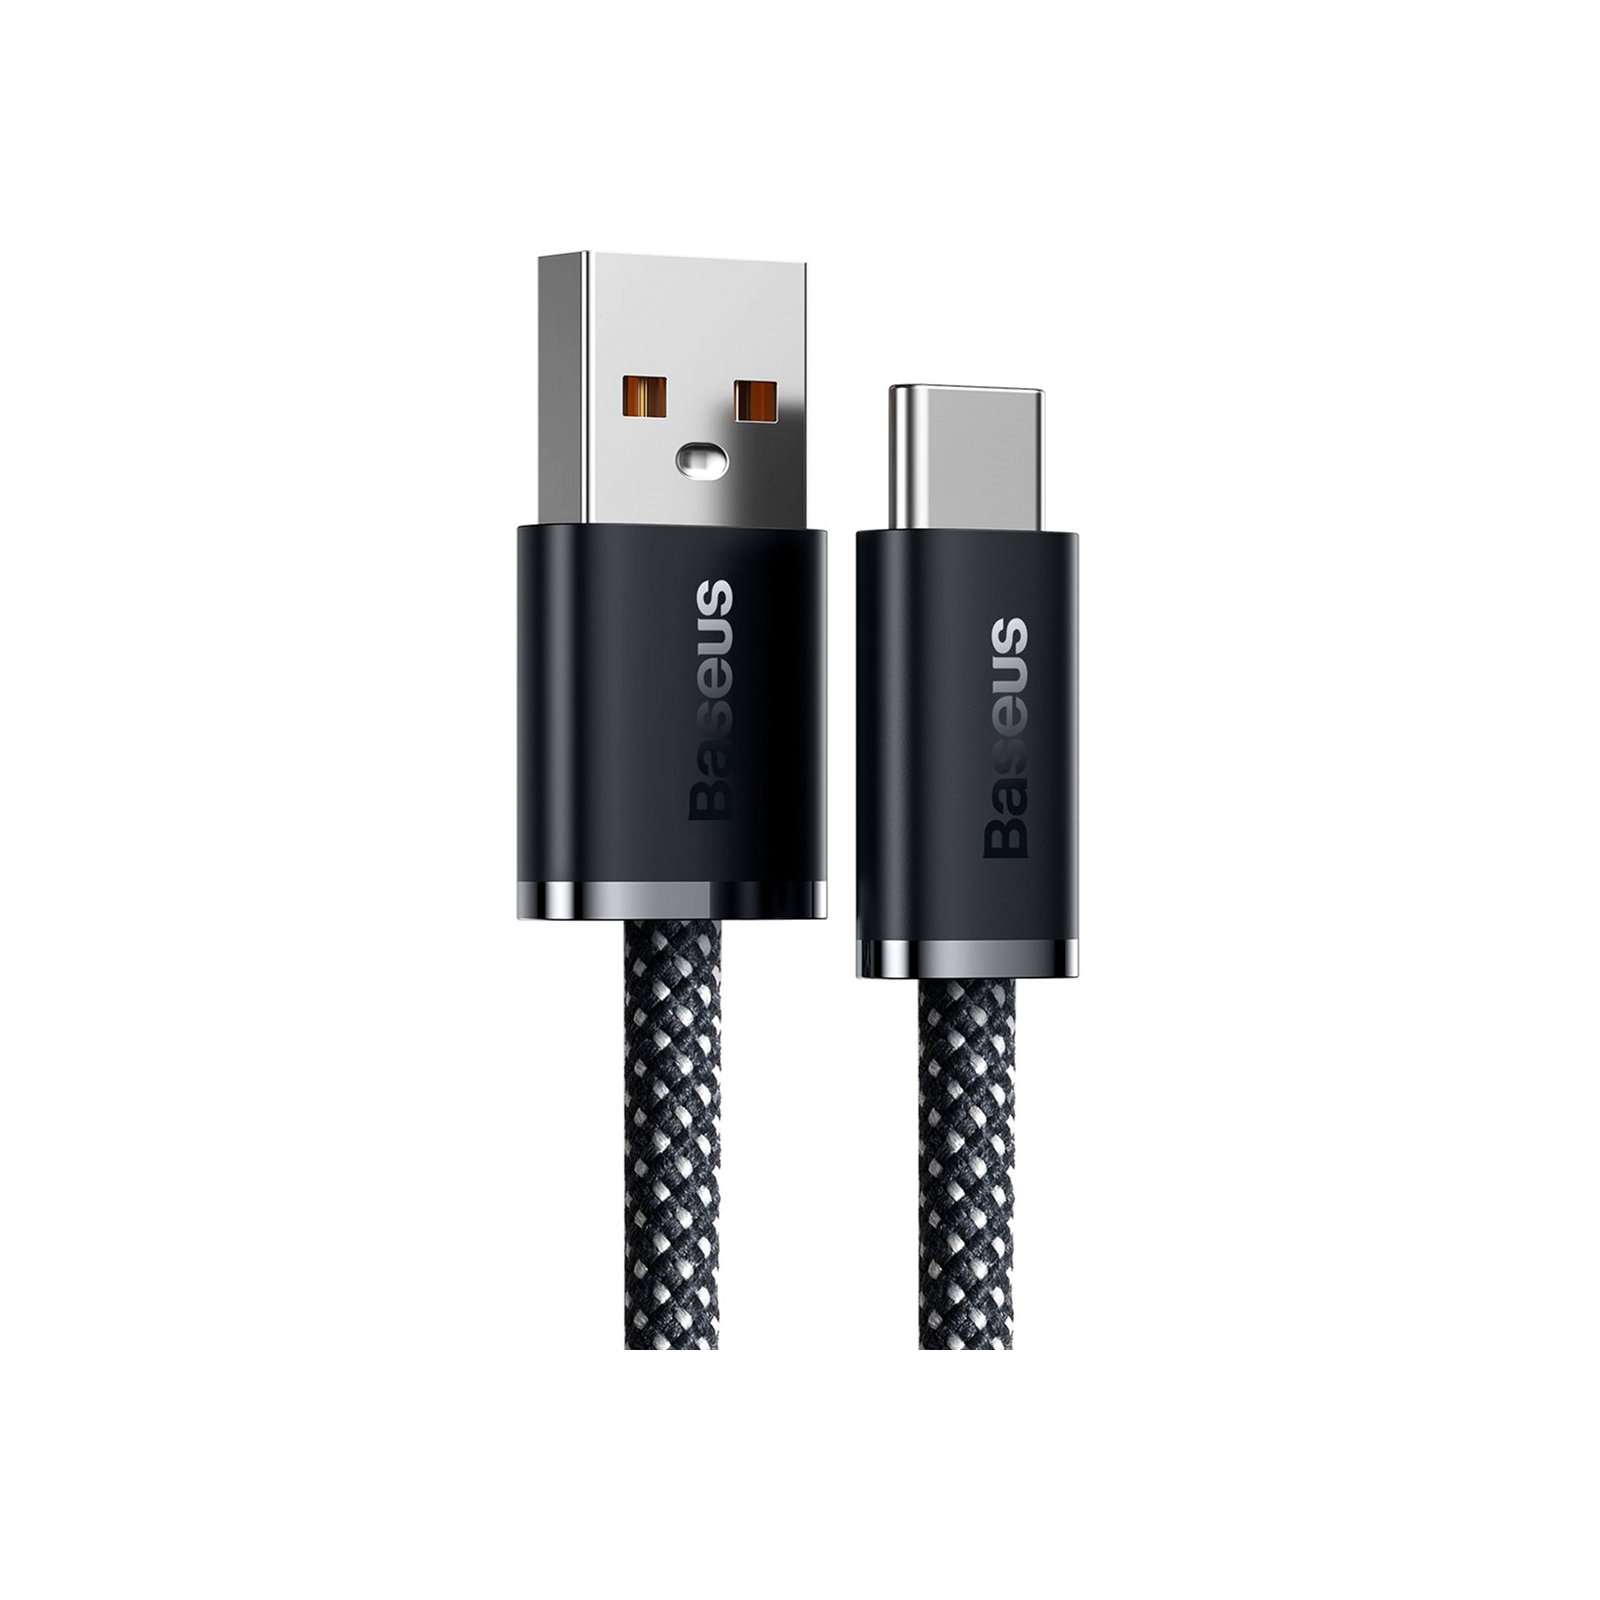 Дата кабель USB 2.0 AM to Type-C 1.0m 5A Gray Baseus (CALD000616) зображення 2